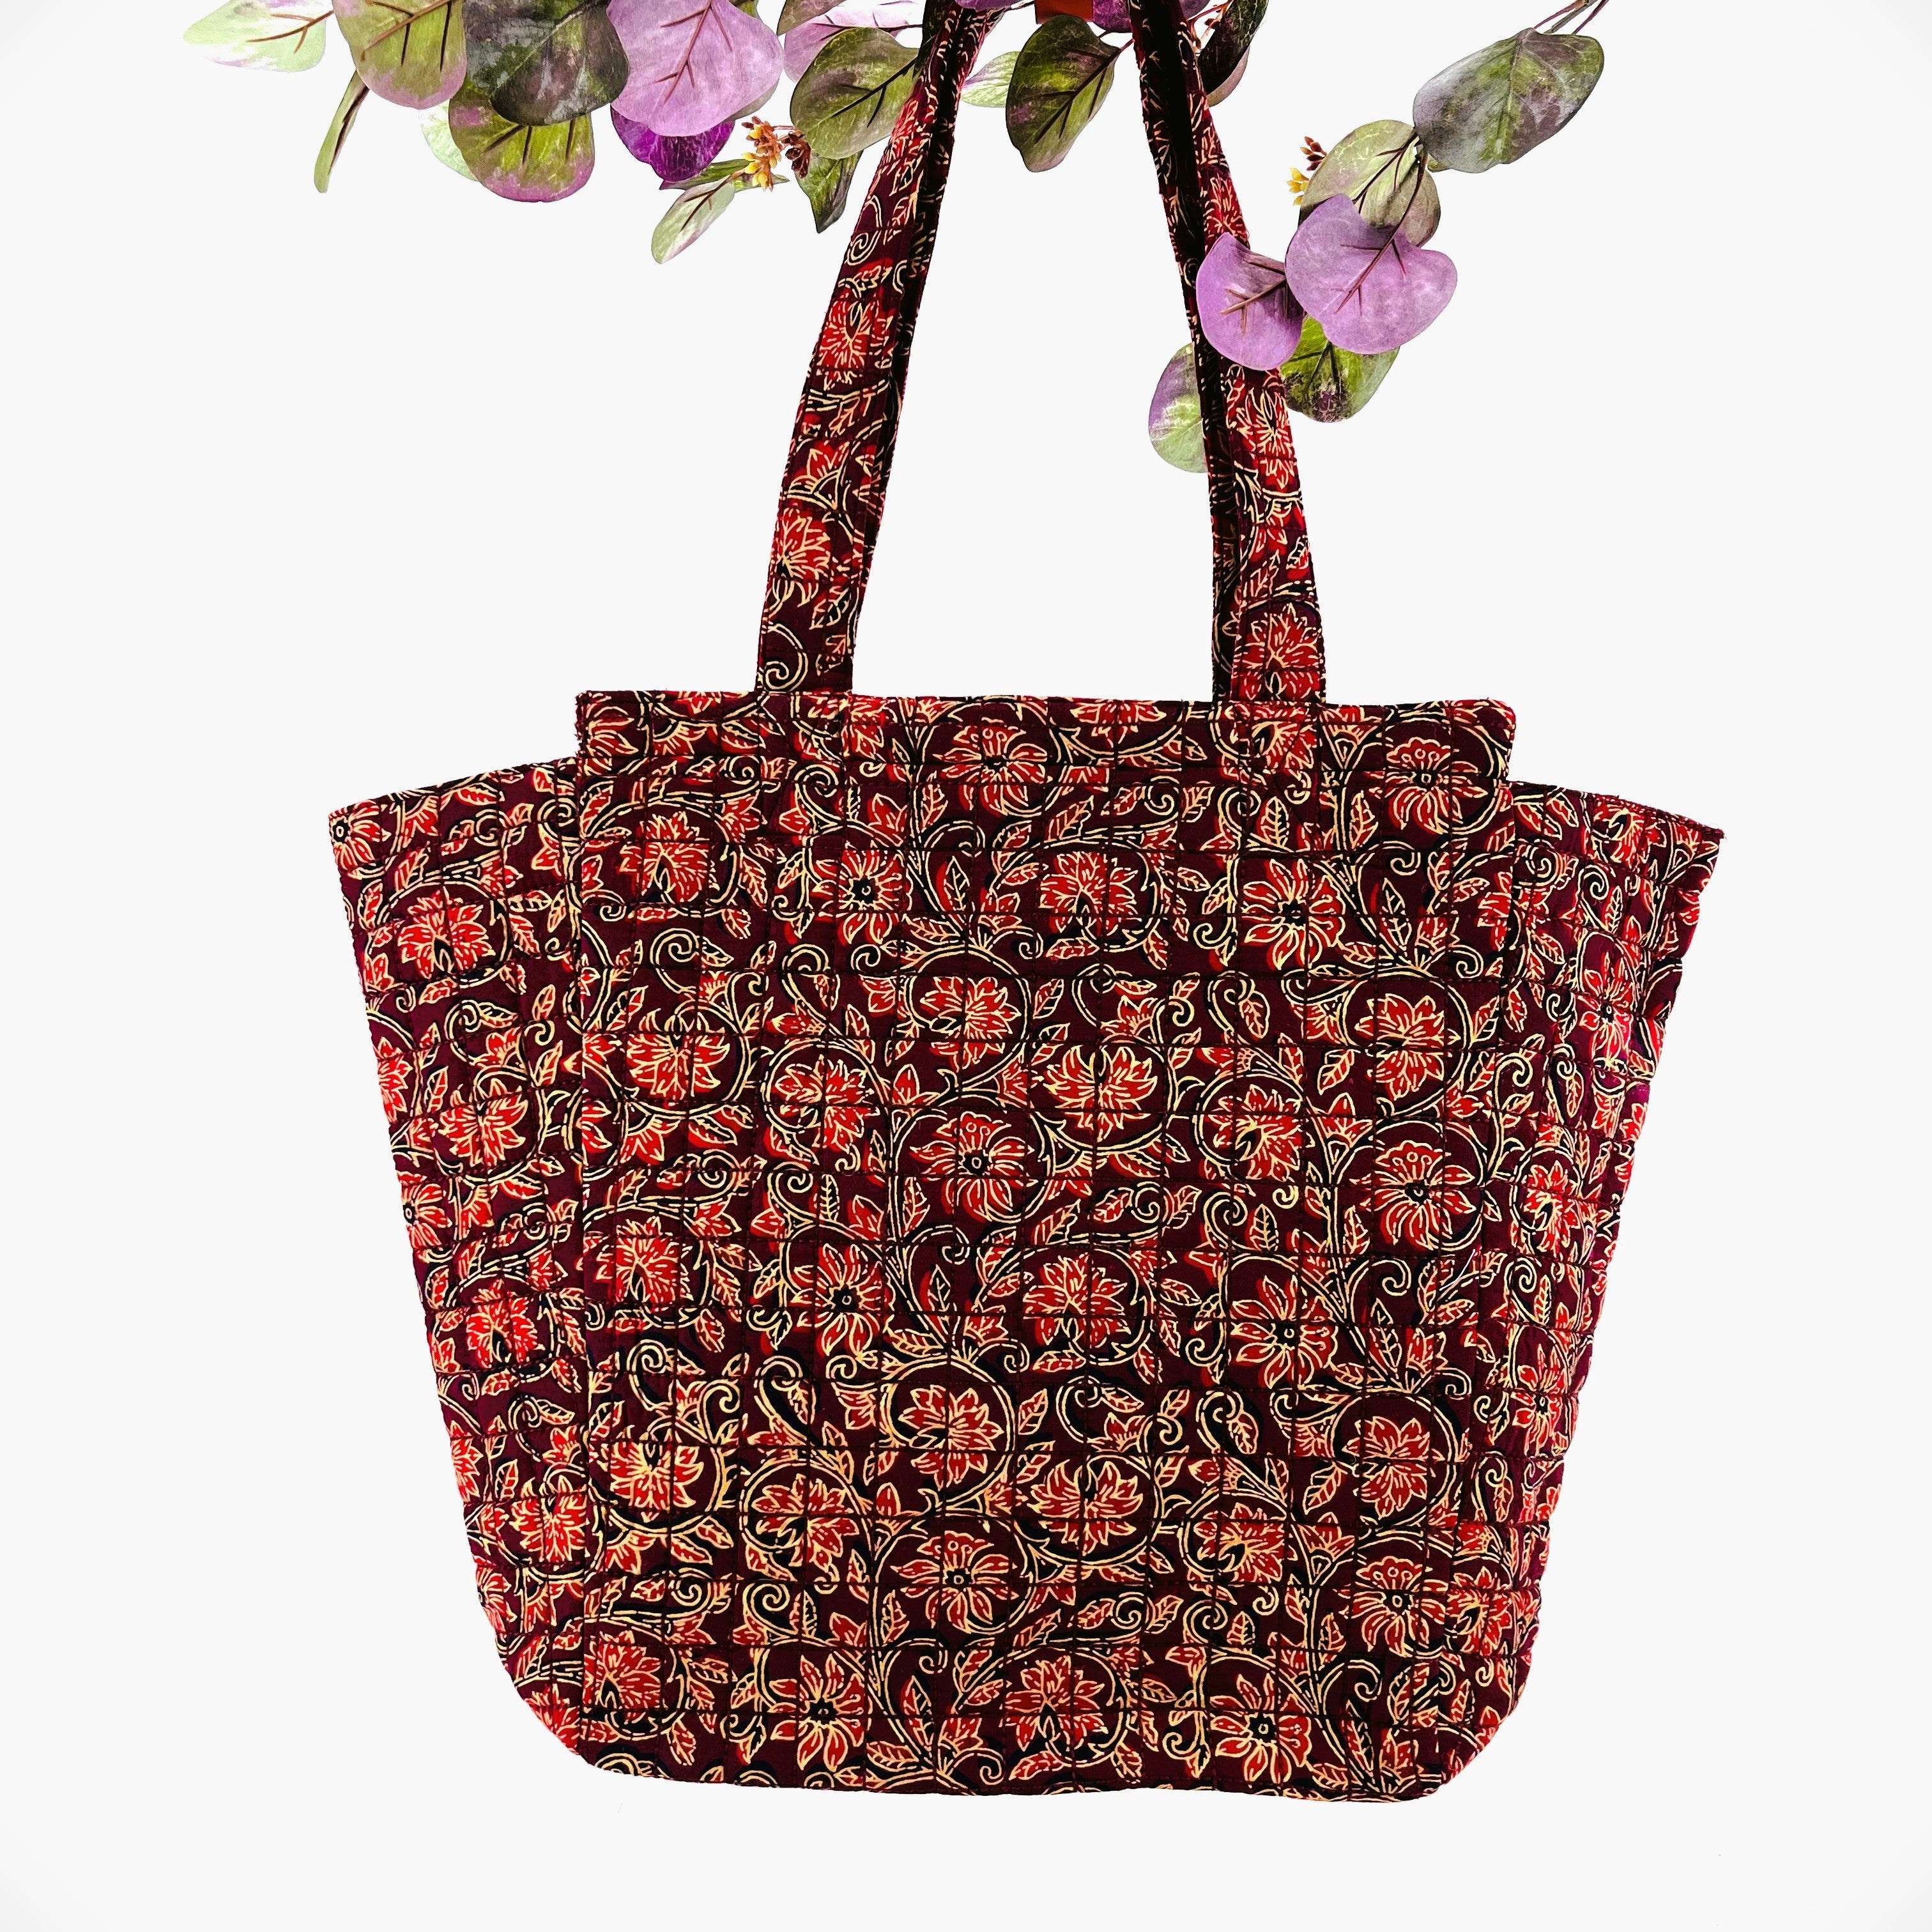 Printed Pattern Tote Bag, Wine Red